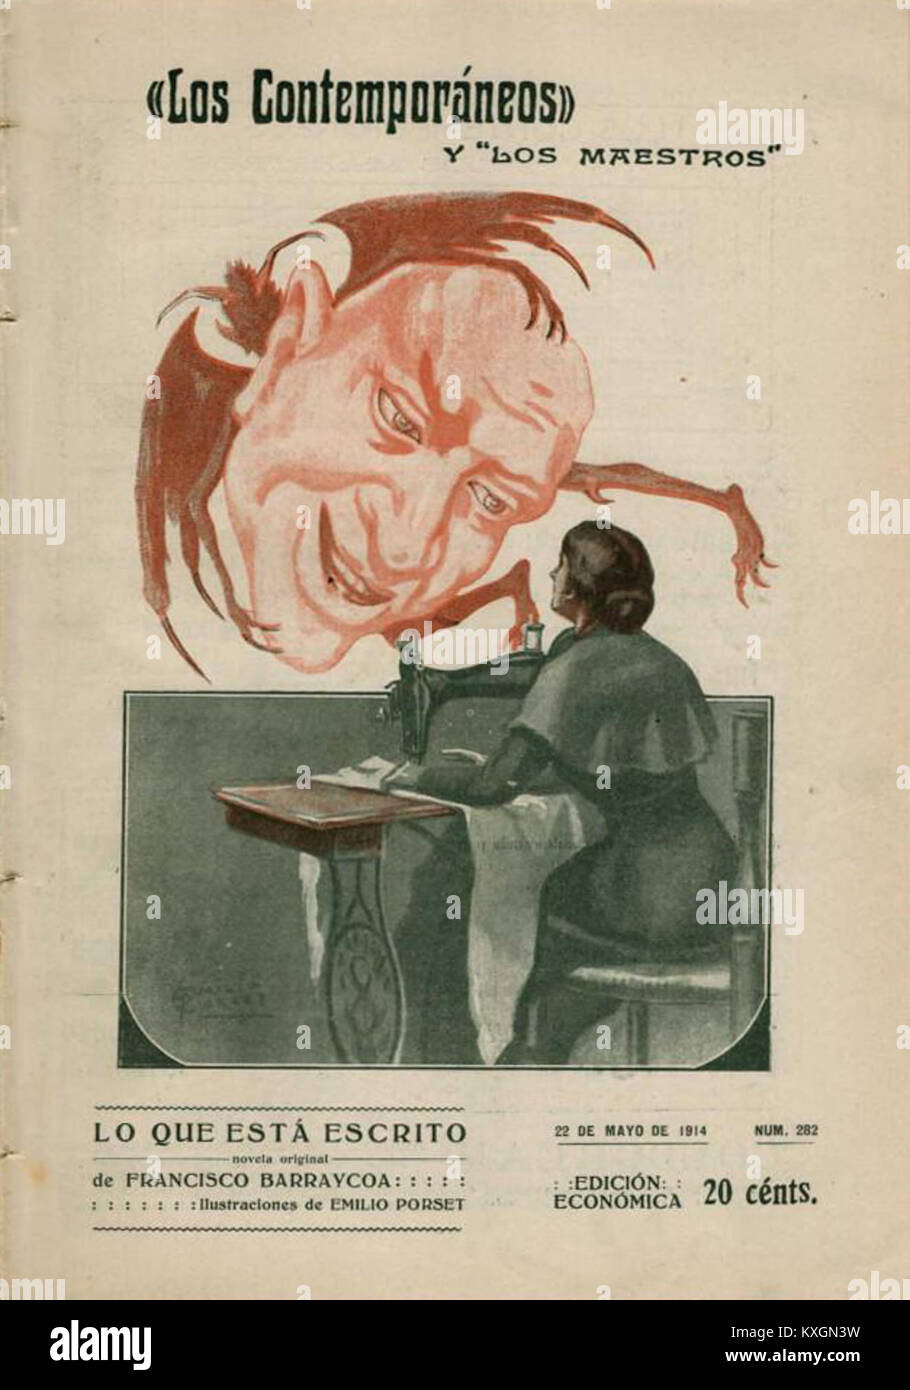 1914-05-22, Los Contemporáneos, Lo que está escrito, de Francisco Barraycoa, Emilio Porset Stock Photo